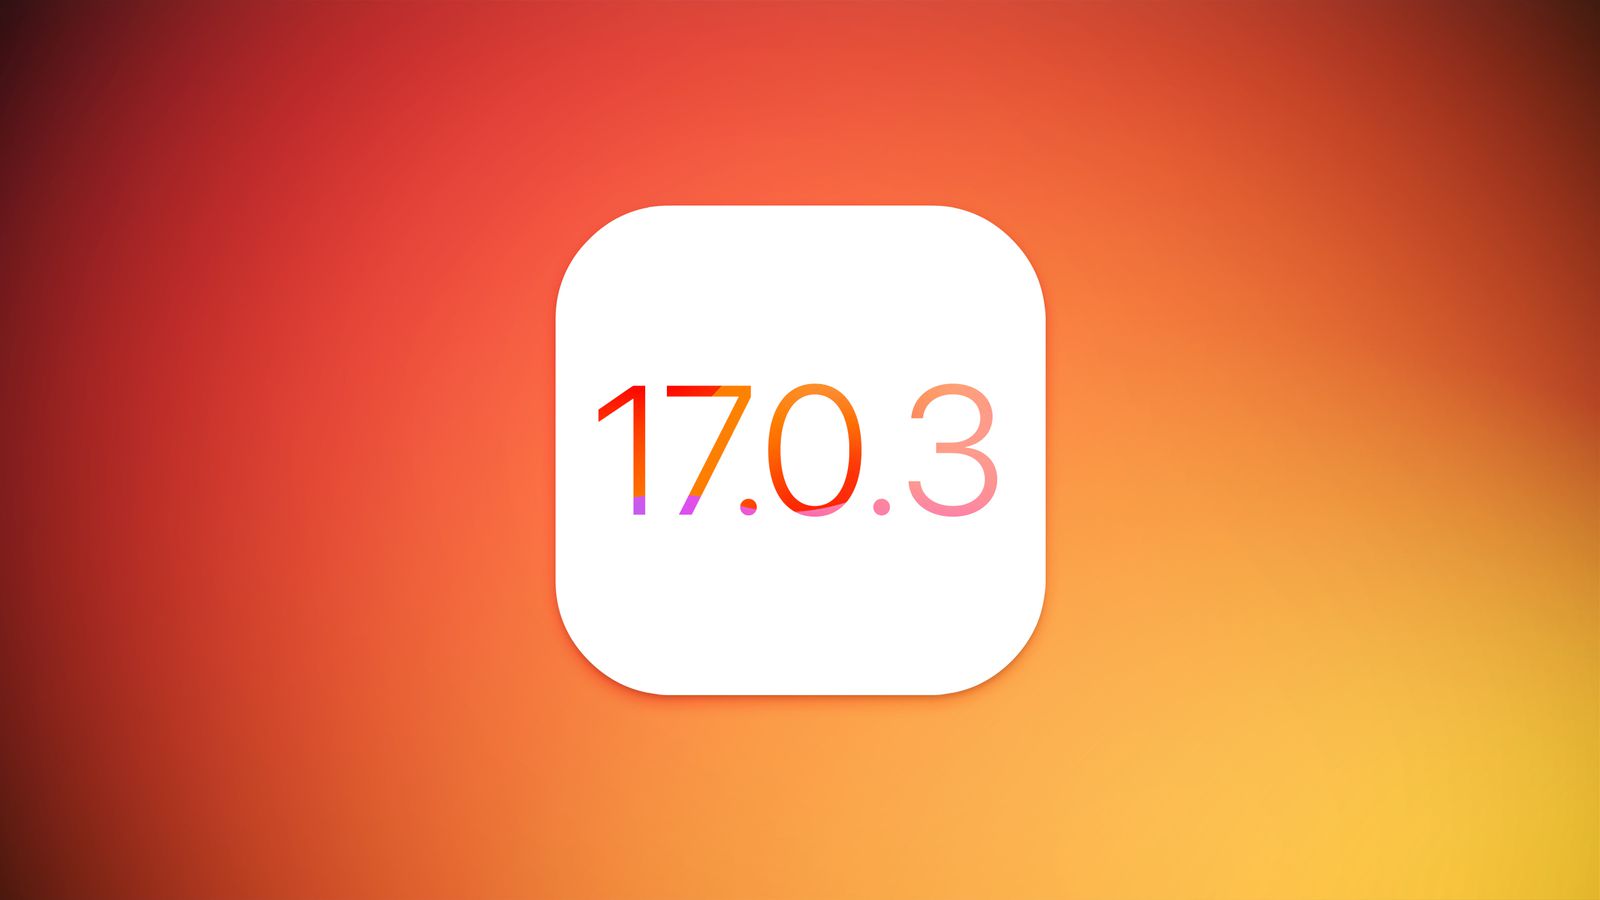 Apple verhelpt met iOS 17.0.3-update het probleem van oververhitting van iPhone 15 Pro en iPhone 15 Pro Max